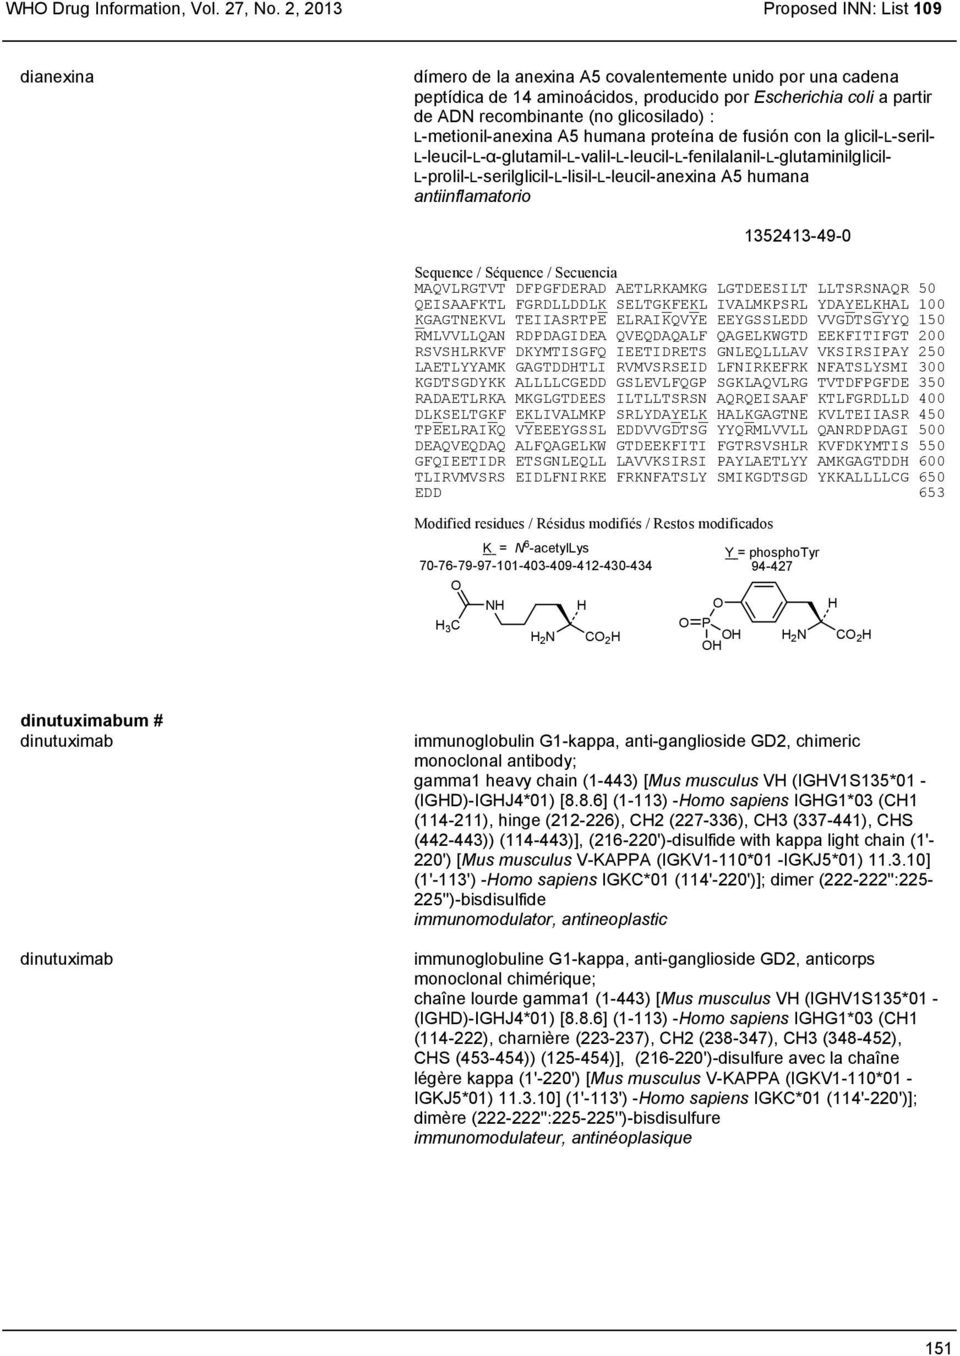 glicosilado) : L-metionil-anexina A5 humana proteína de fusión con la glicil-l-seril- L-leucil-L-α-glutamil-L-valil-L-leucil-L-fenilalanil-L-glutaminilglicil-